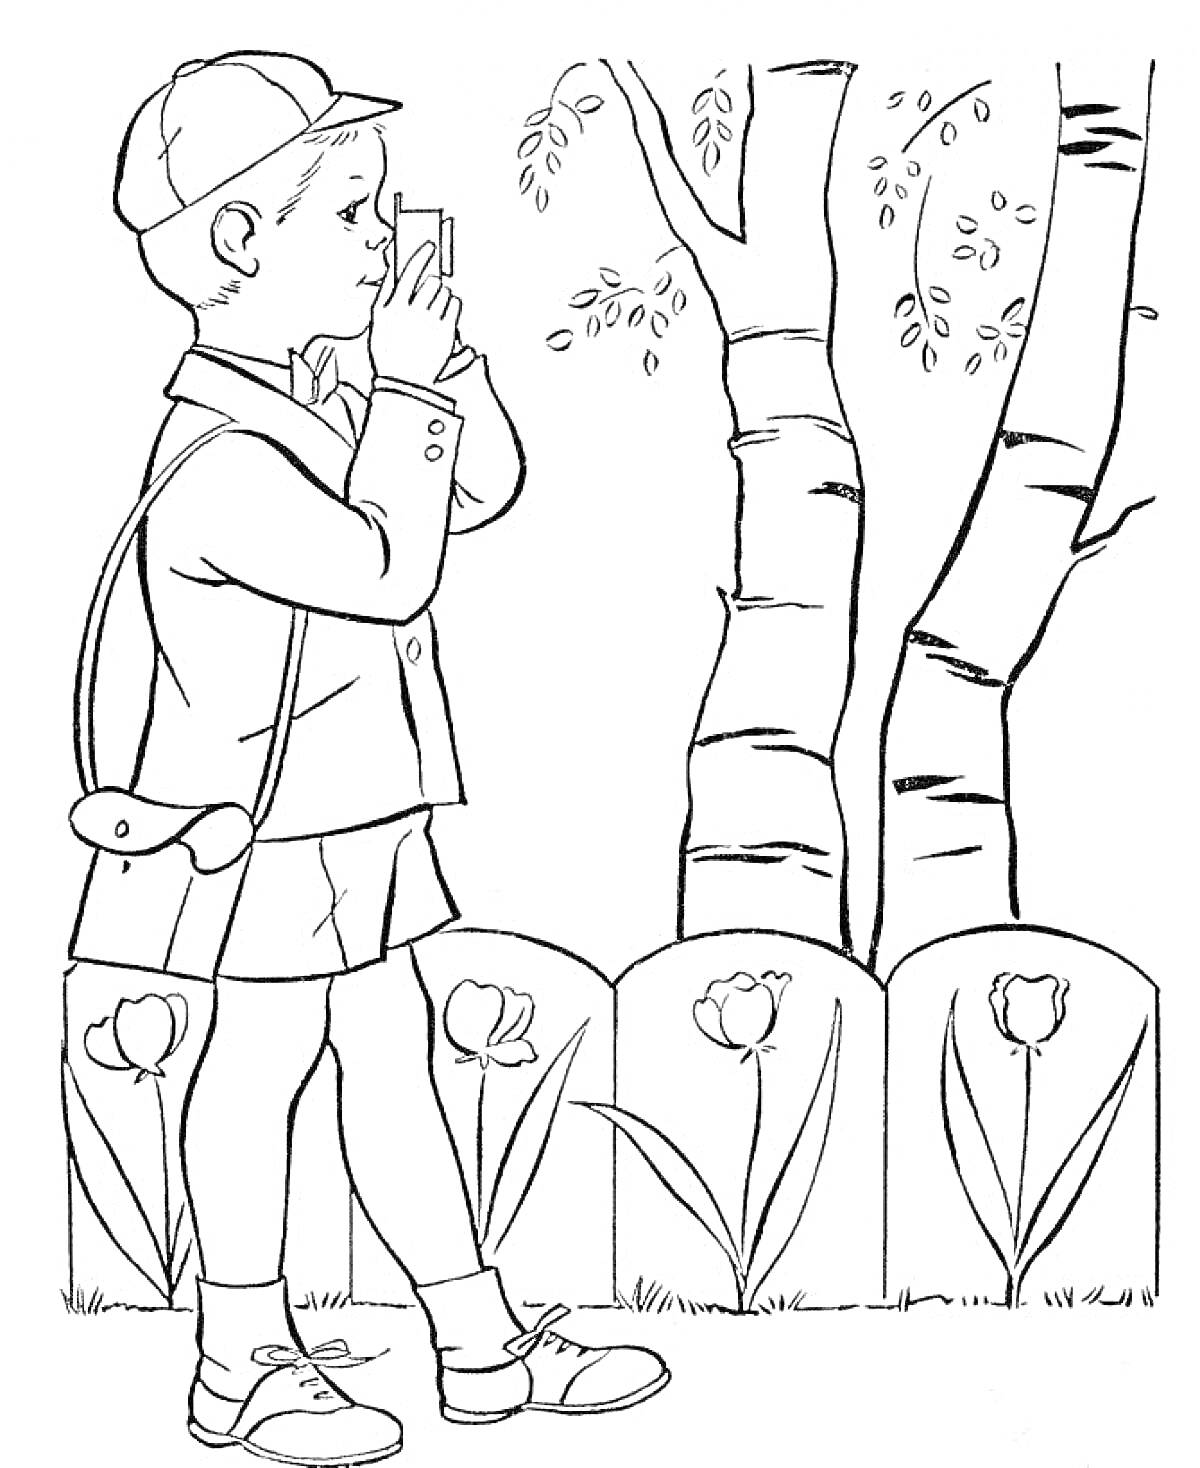 Раскраска Мальчик с фотоаппаратом фотографирует березы возле клумбы с тюльпанами